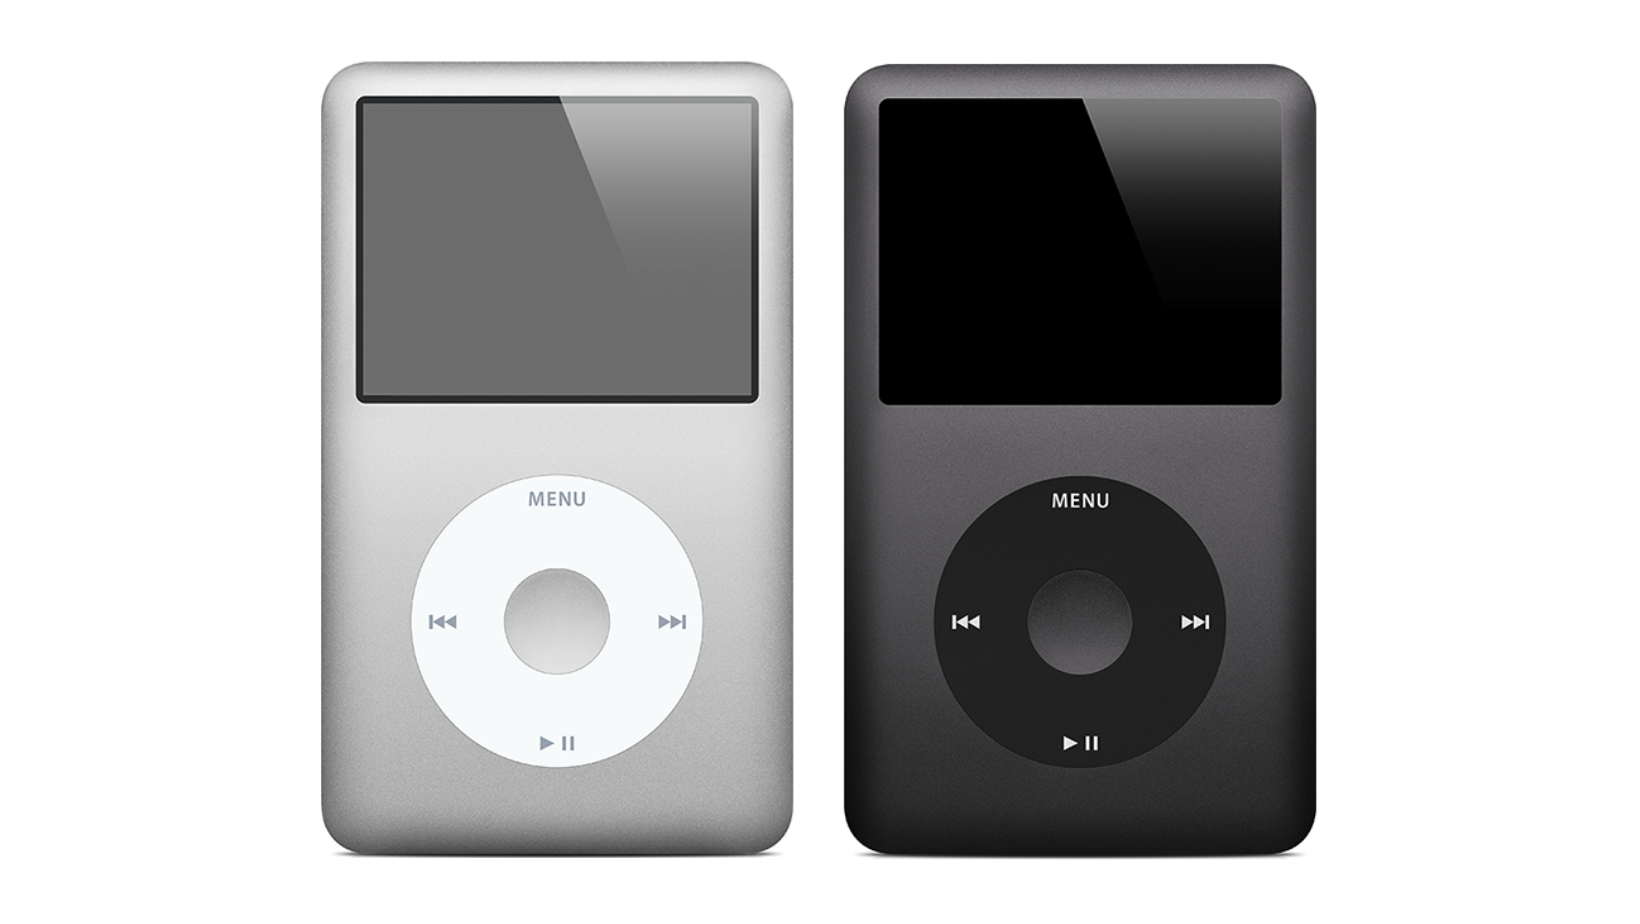 iPod classico